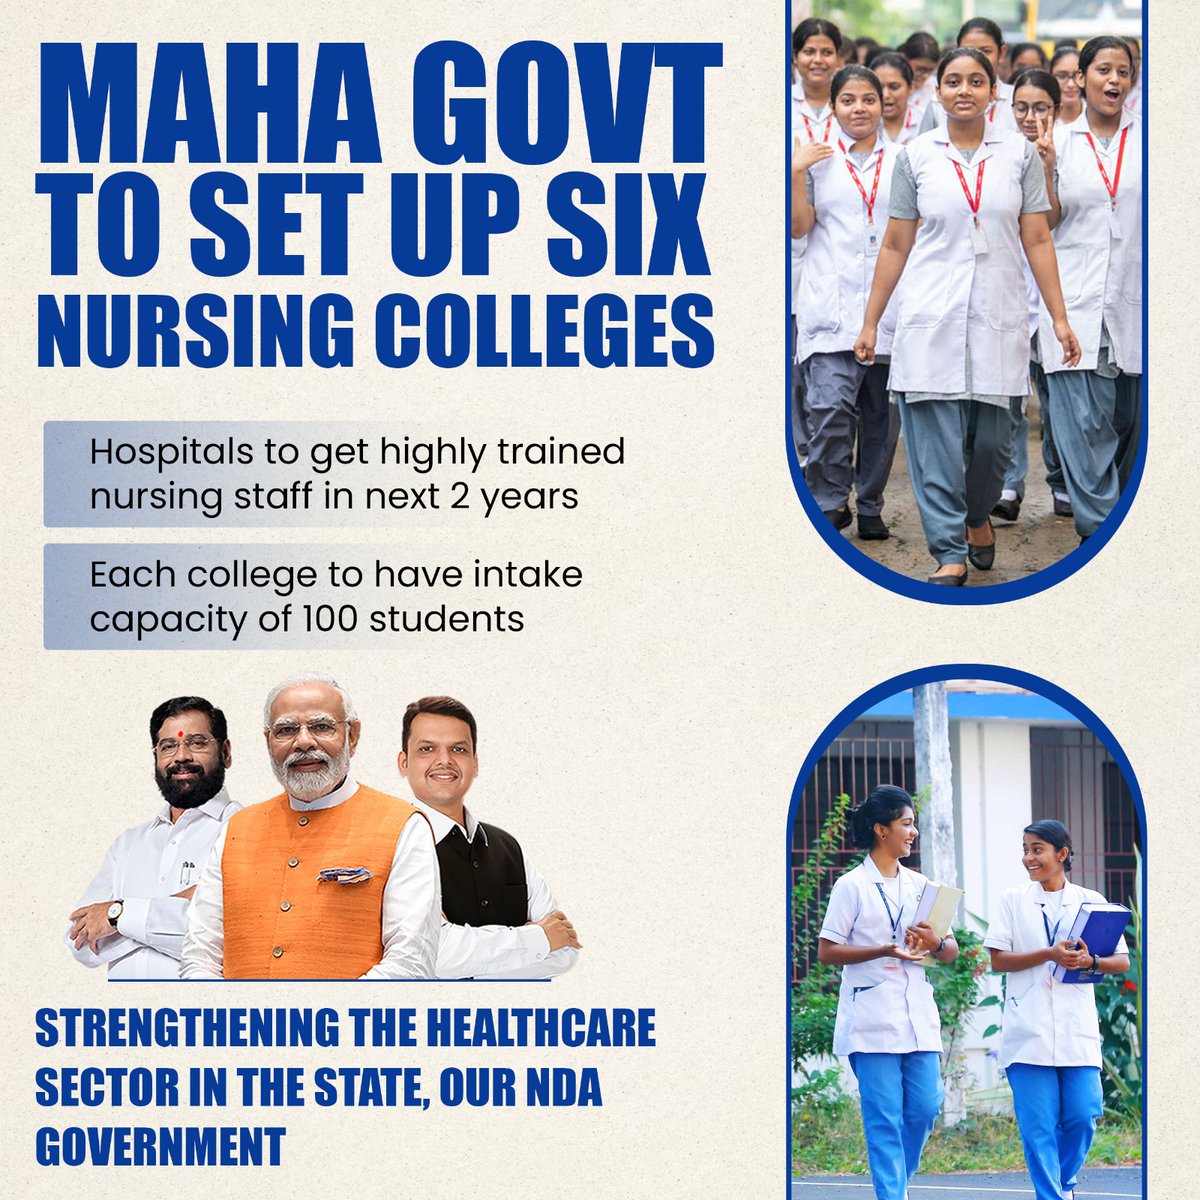 छह नर्सिंग कॉलेज स्थापित करने की उनकी प्रतिबद्धता के लिए सीएम एकनाथ शिंदे सरकार को सलाम, जिनमें से प्रत्येक में 100 छात्रों की प्रवेश क्षमता है 100 छात्रों को दाखिला देने के लिए तैयार है। नर्सिंग के भविष्य में निवेश करने का मतलब है हमारे समुदायों की भलाई में निवेश करना।